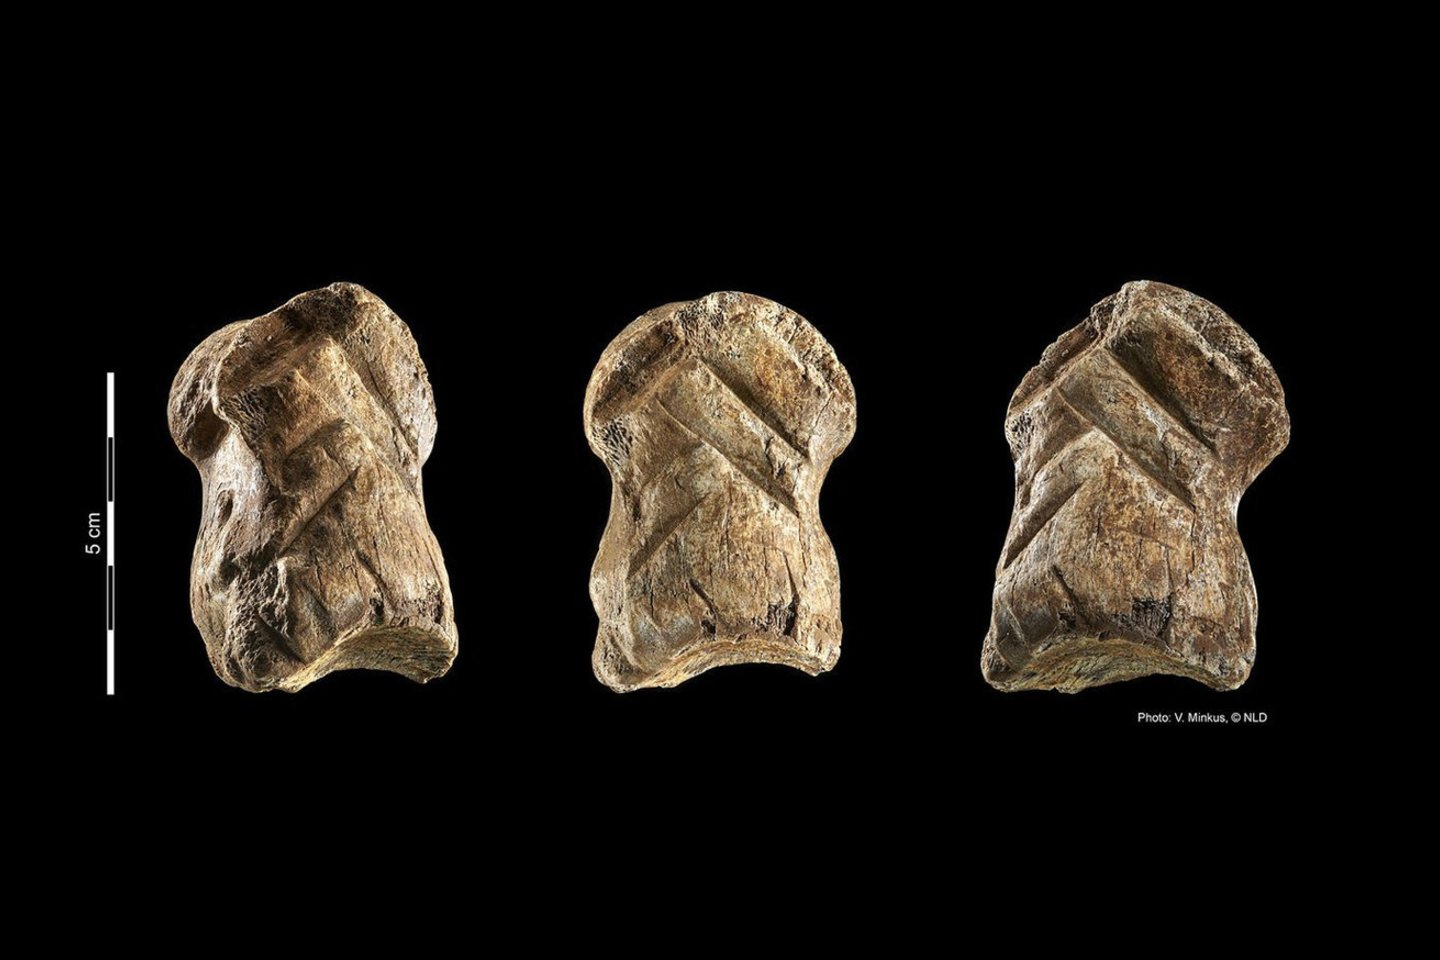  Maždaug prieš 51 000 metų neandertaliečiai šiame milžiniškame elnio pirštikaulyje išraižė rombinį raštą.